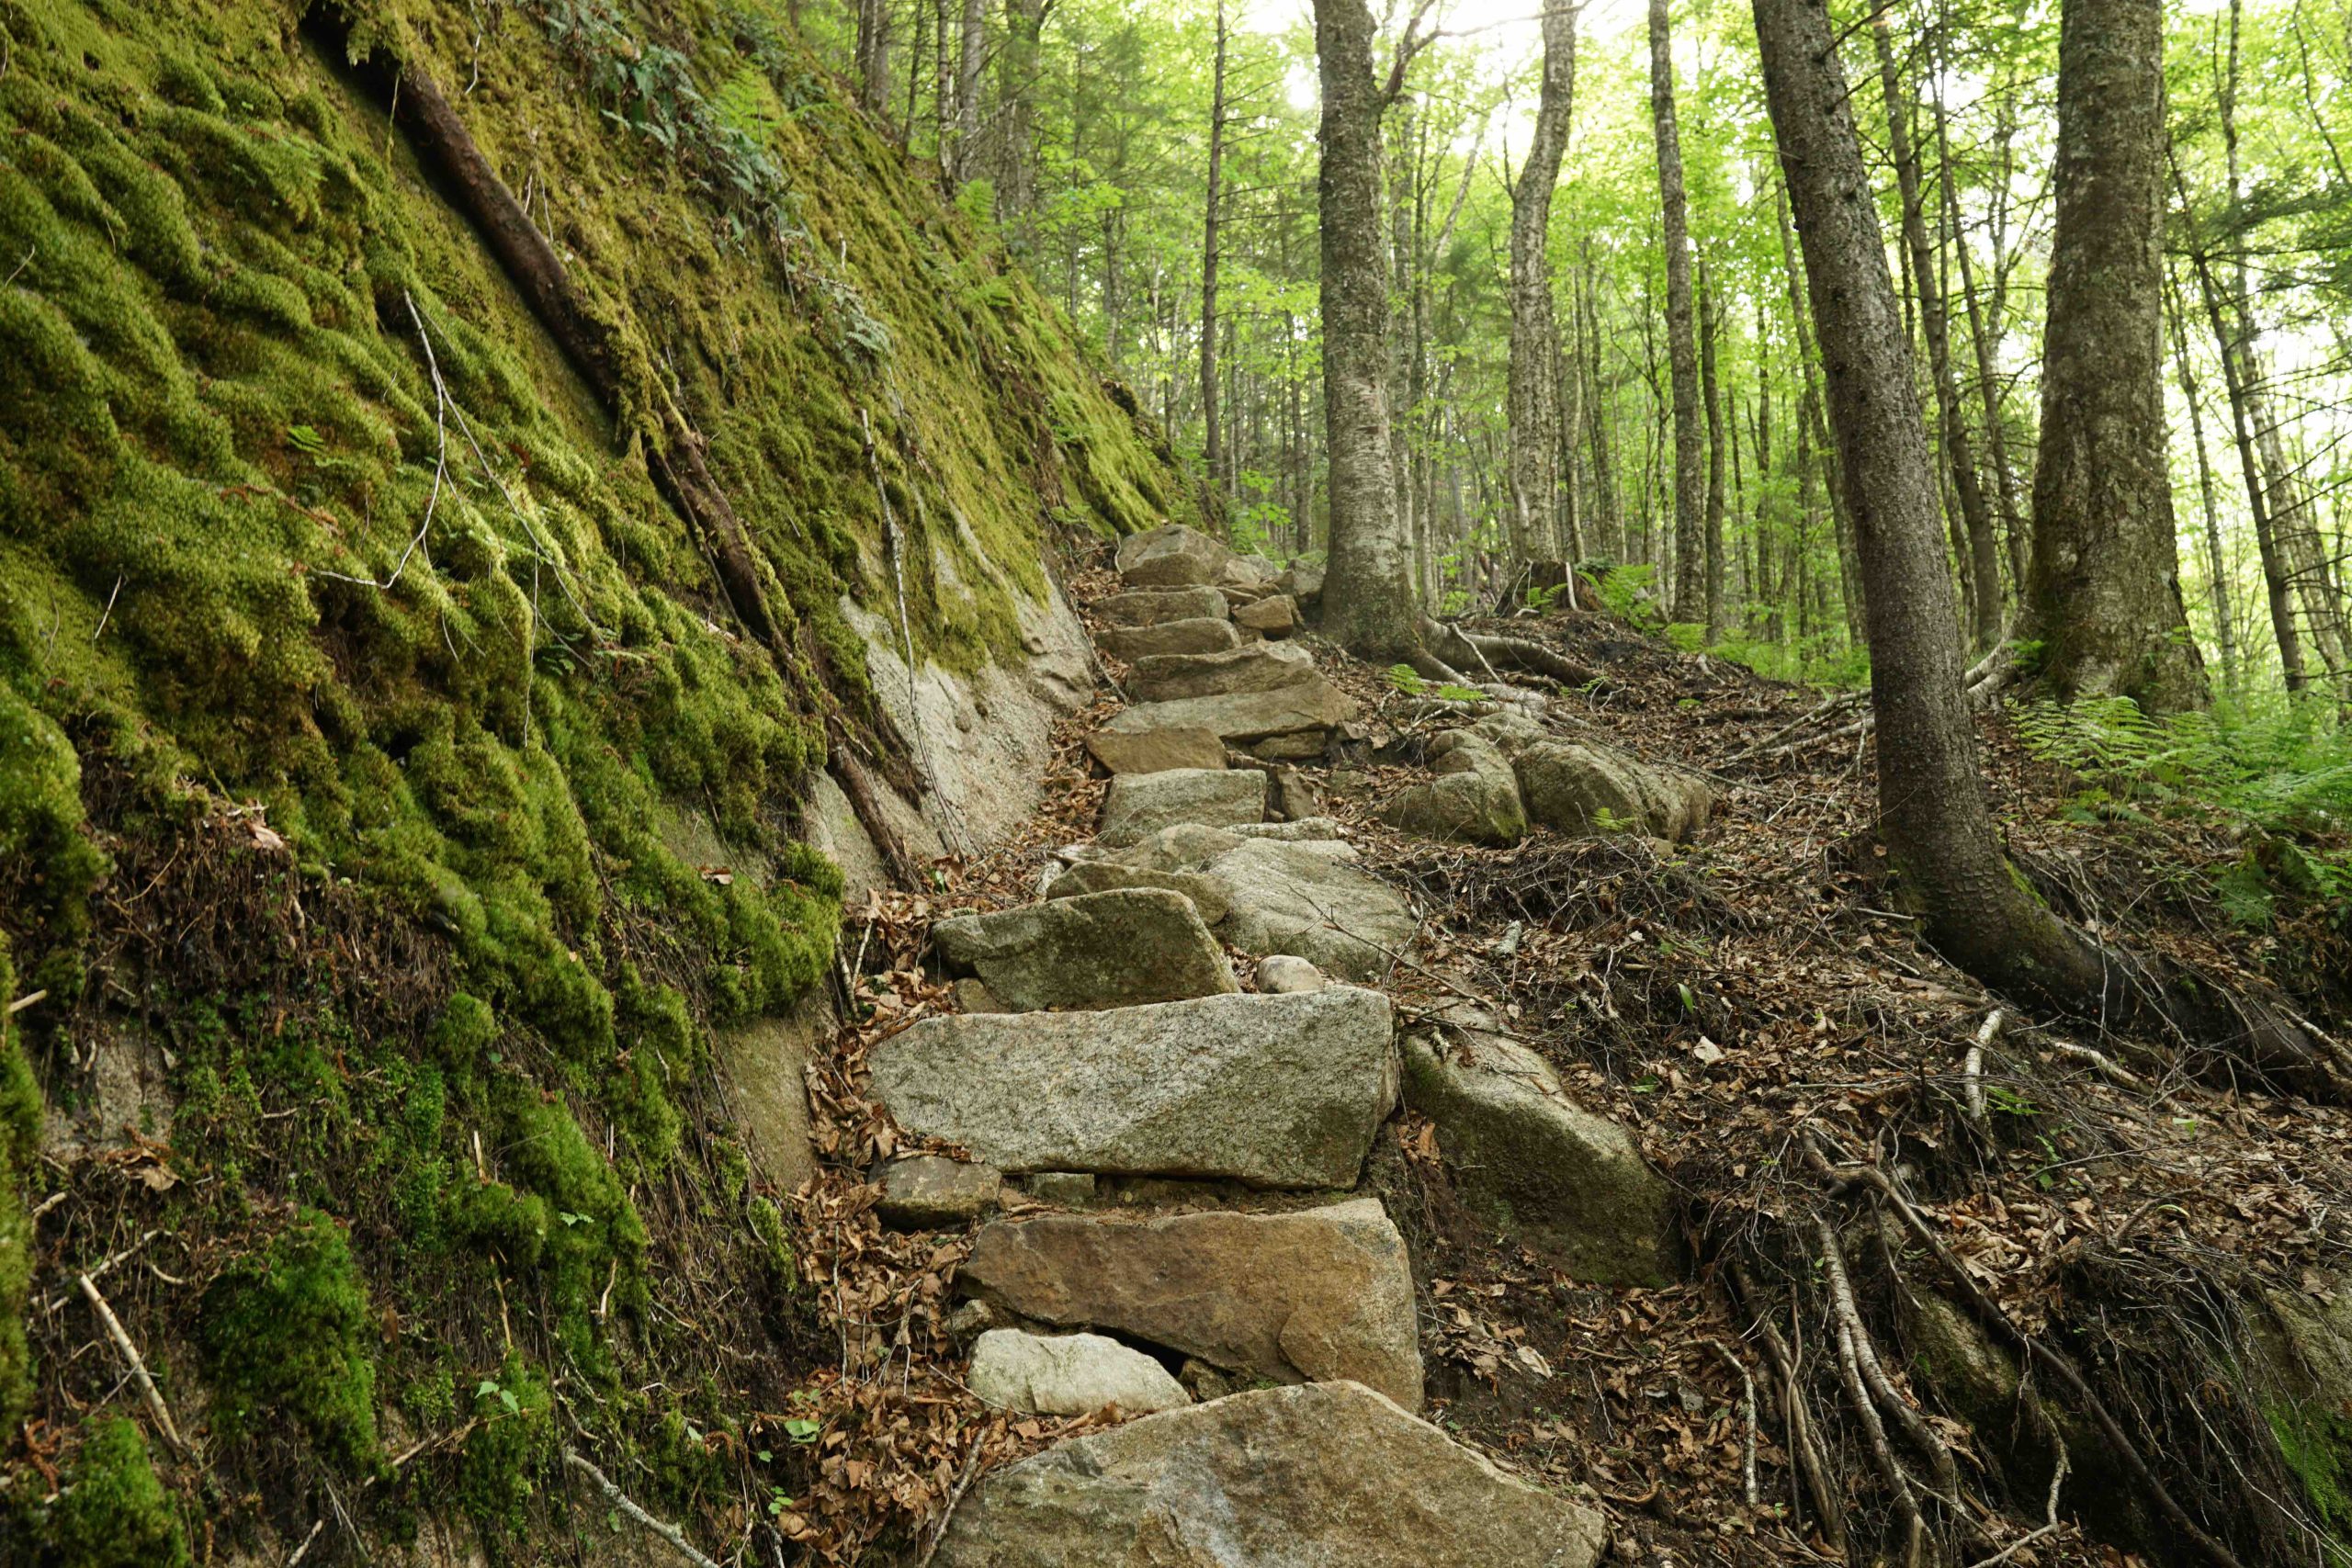 L'escalier des Pas-de-Géant, accessible par les sentiers de la Vallée, avec ses grands rochers créant un escalier en pleine nature, et entourée de végétation luxuriante.